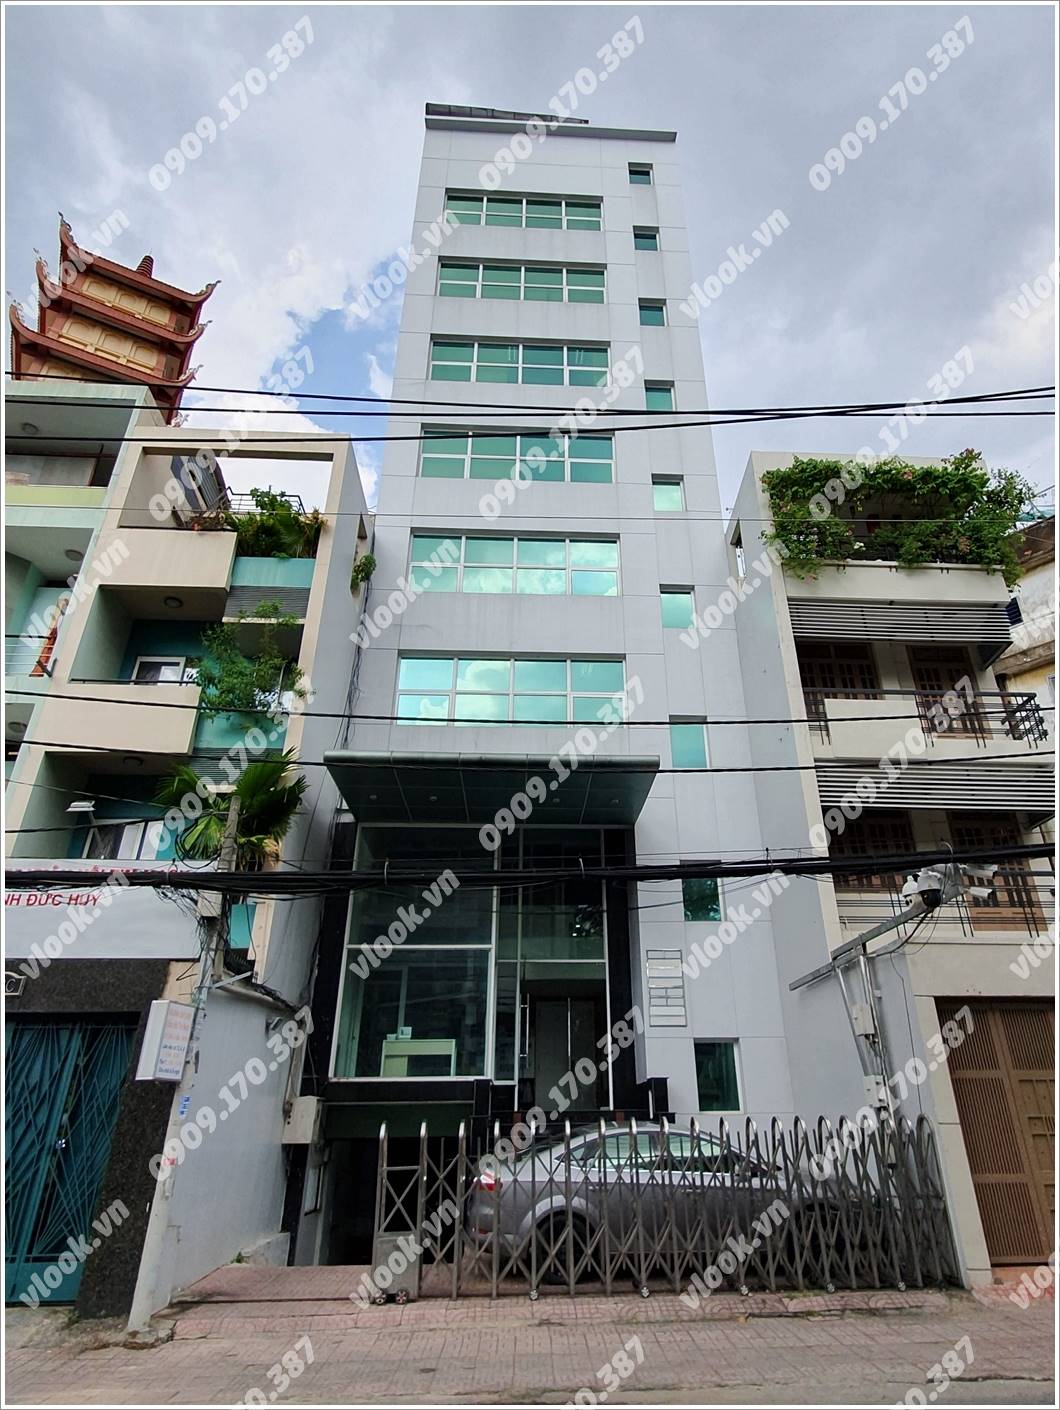 Cao ốc cho thuê văn phòng Thịnh Phát Building, Trần Huy Liệu, Quận Phú Nhuận, TPHCM - vlook.vn